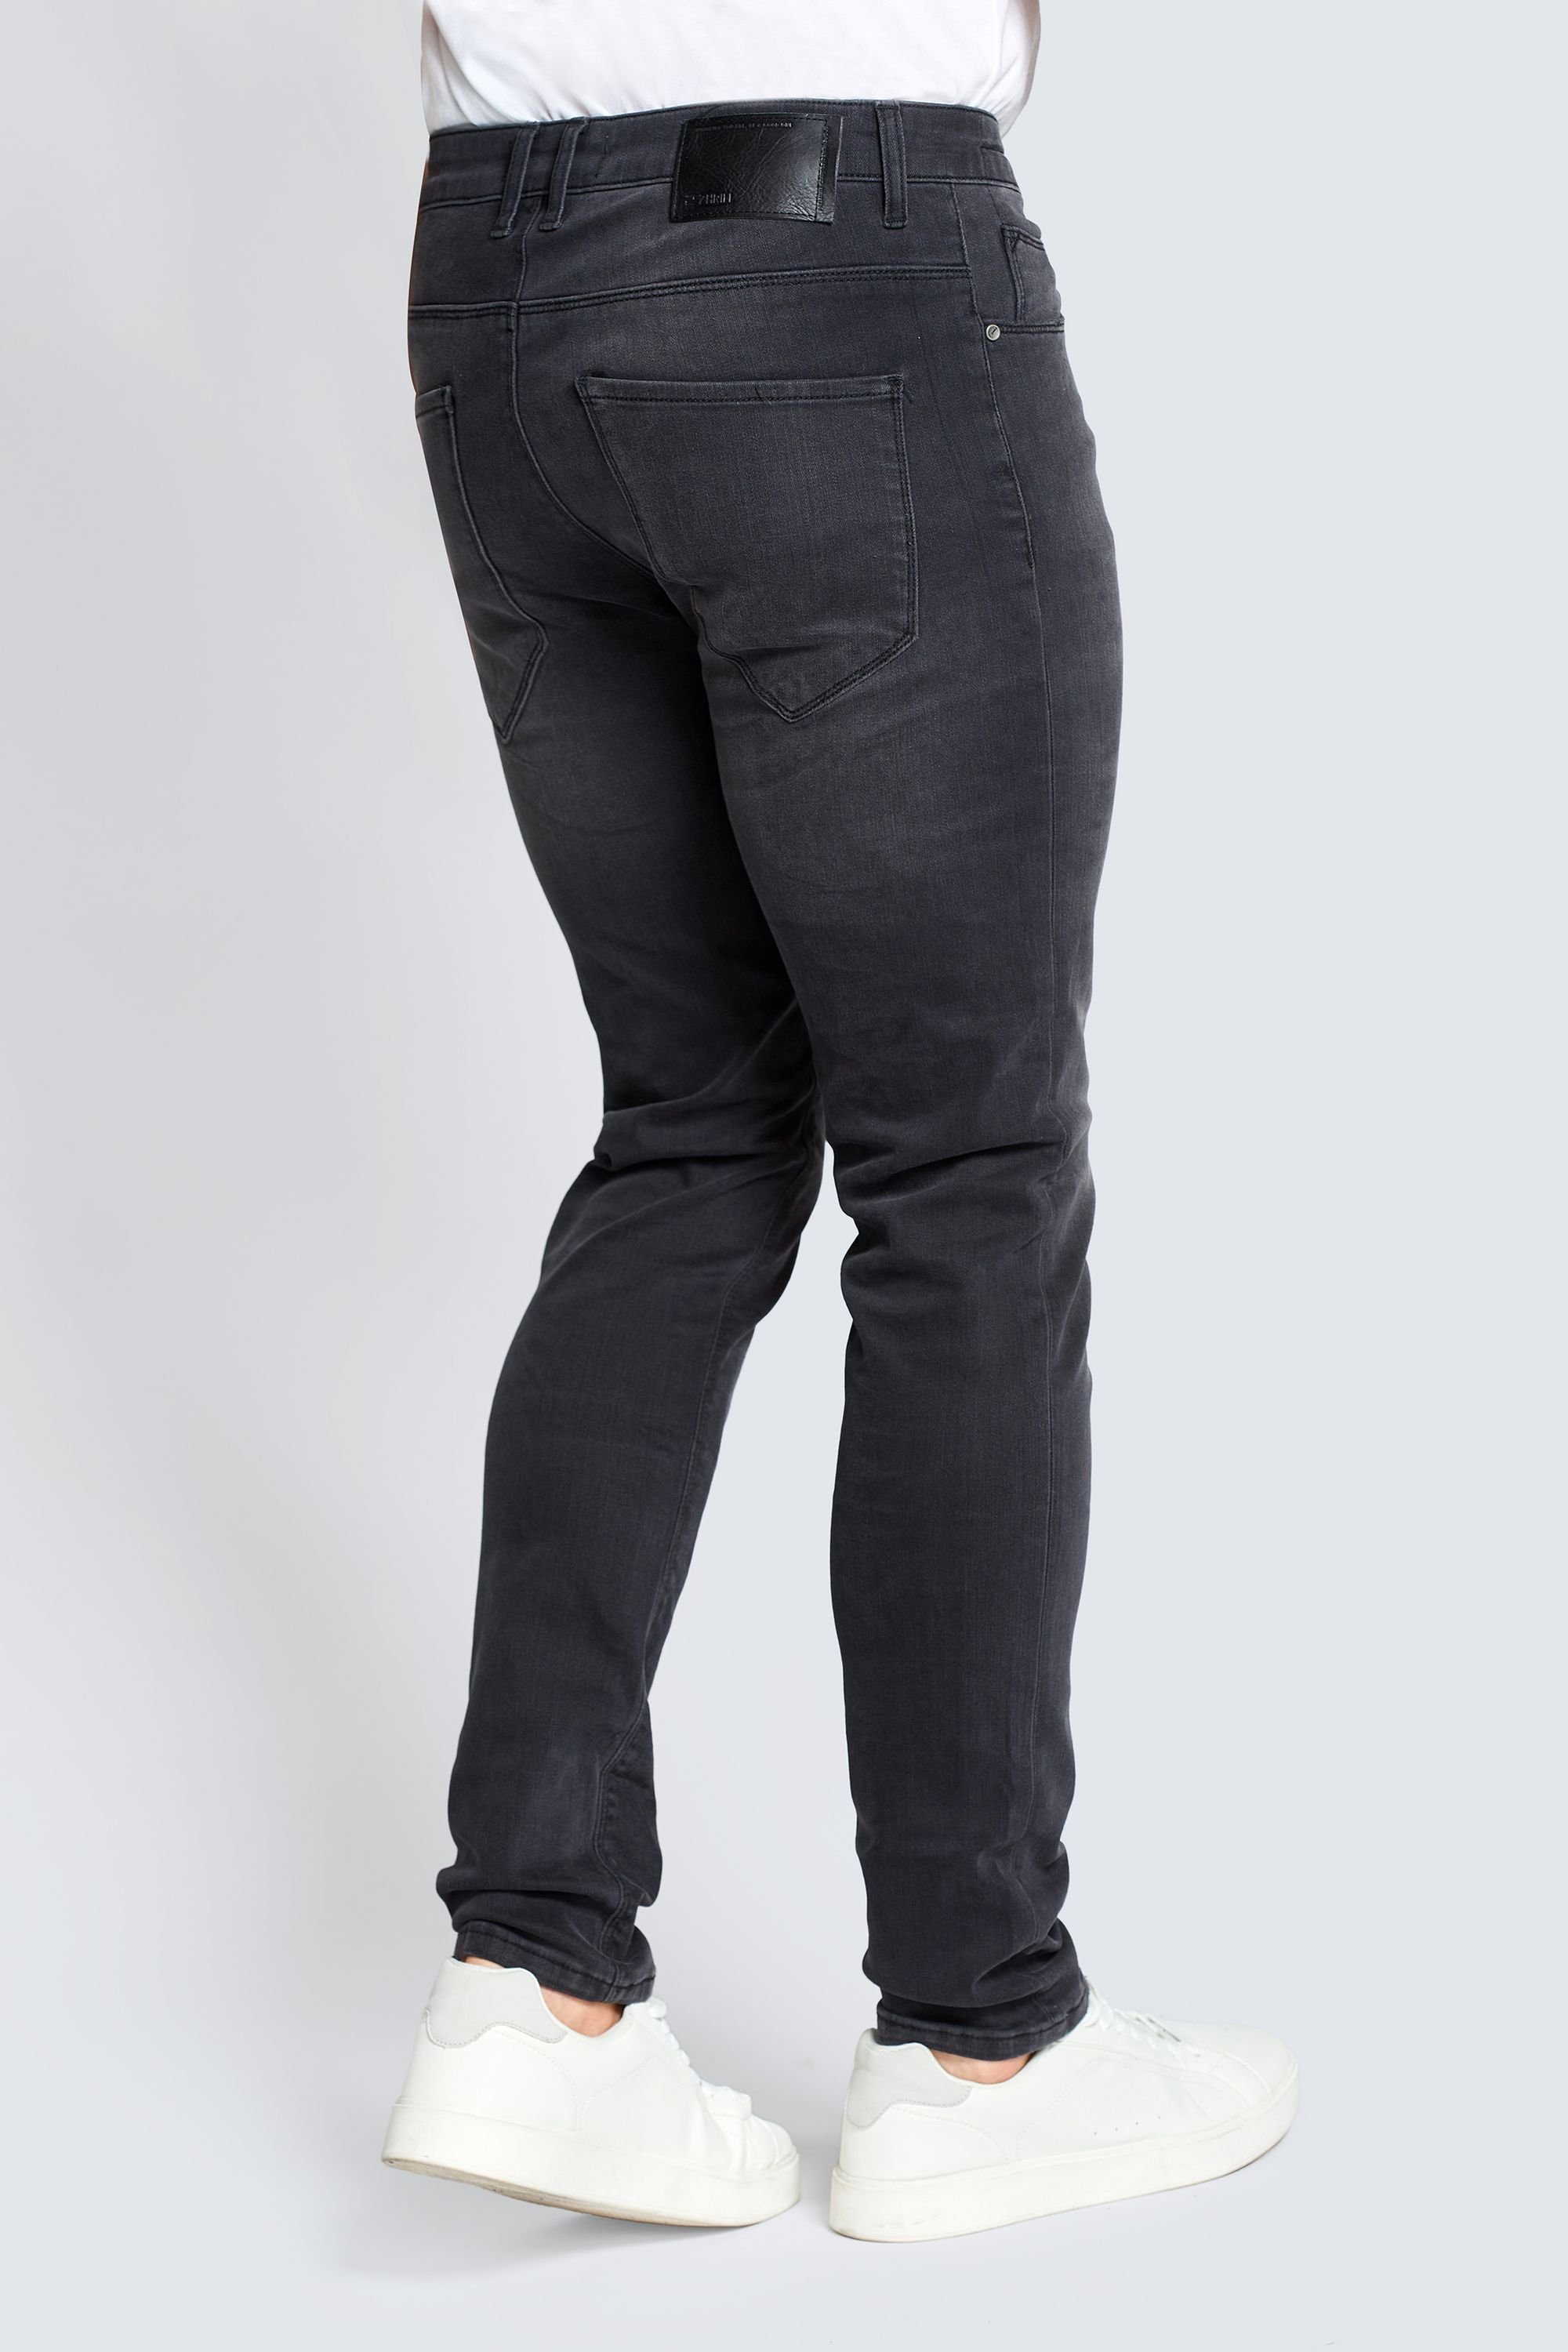 Black Zhrill angenehmer 5-Pocket-Jeans Tragekomfort JACK Jeans